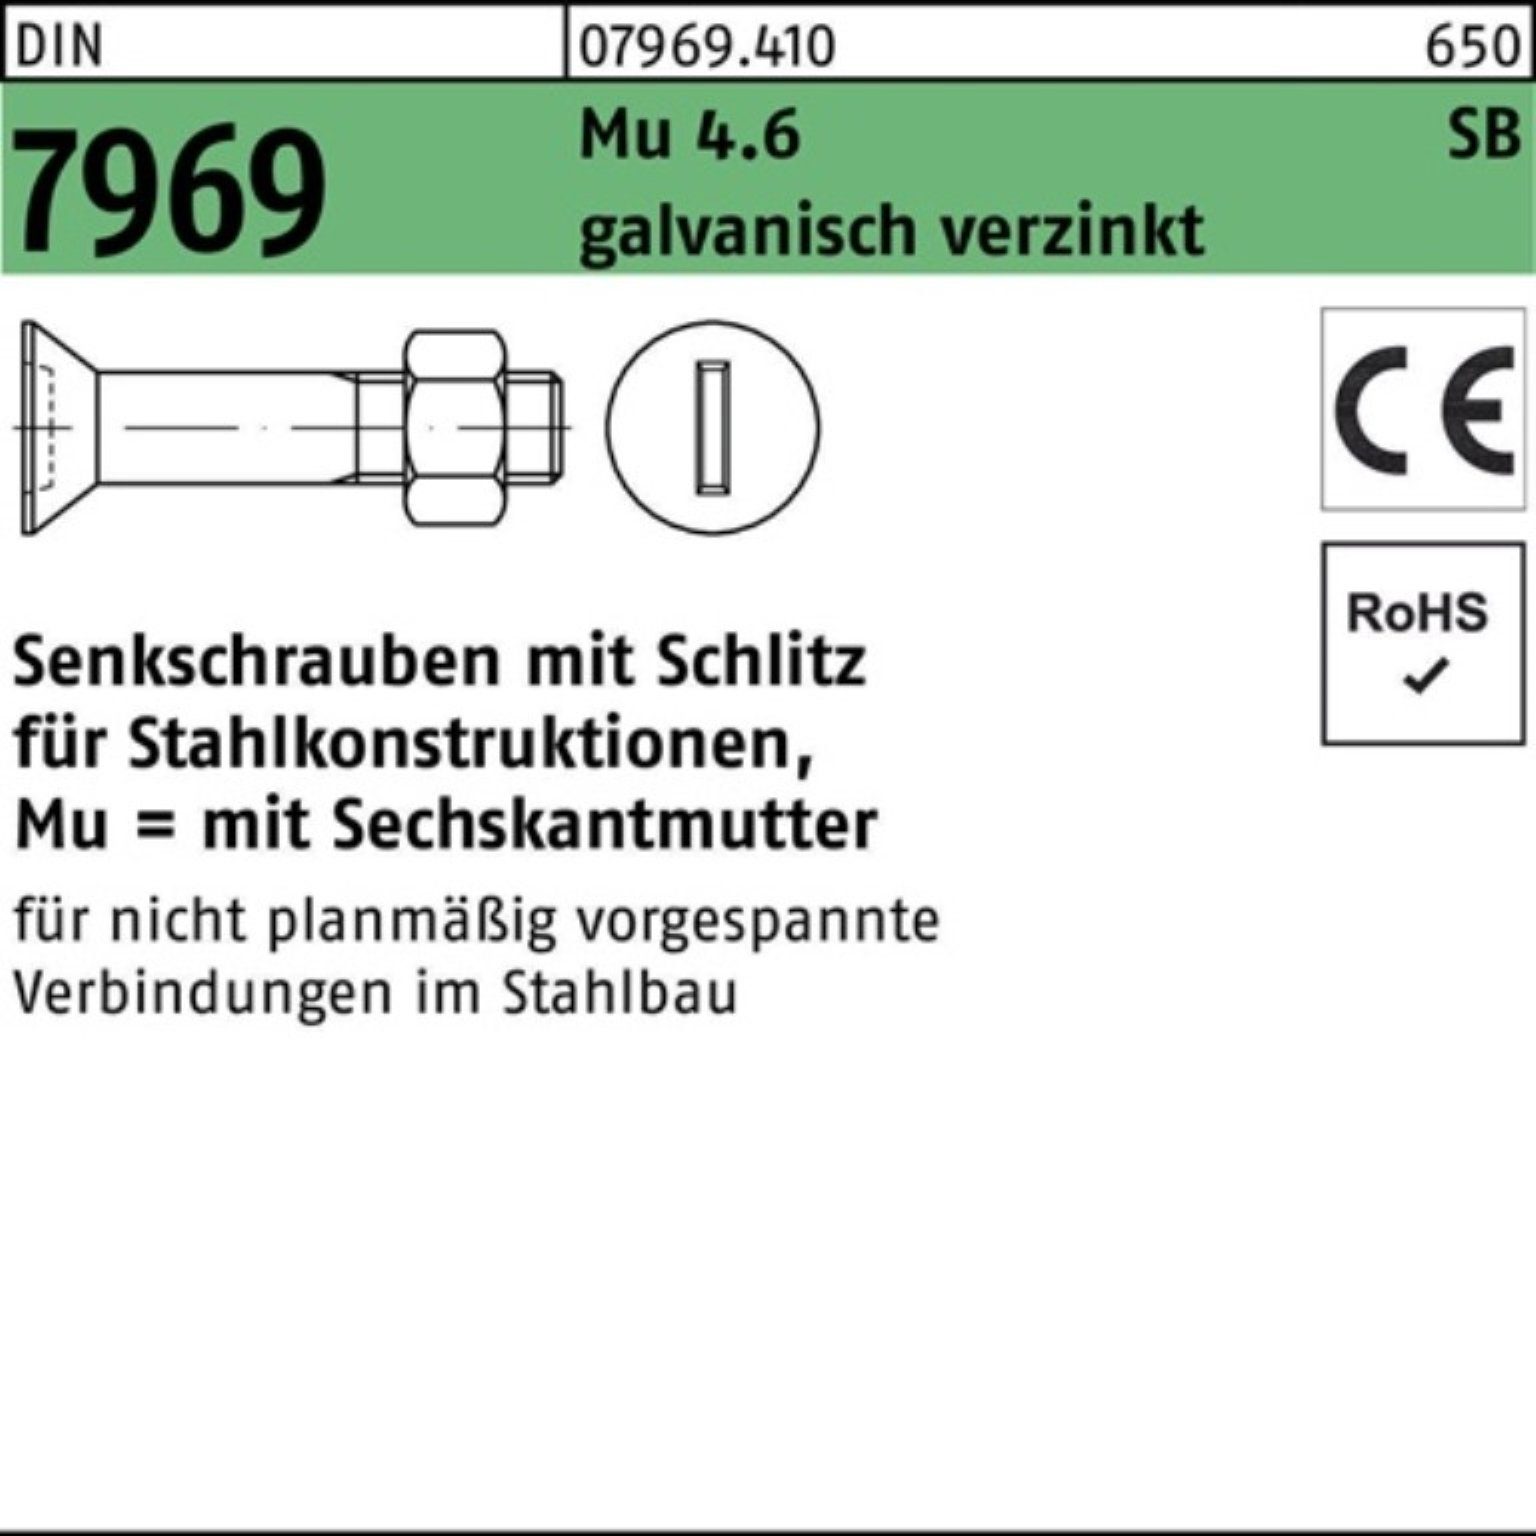 Reyher Senkschraube 4.6 Schlitz/Mutter Pack 90 100er M16x 7969 DIN Senkschraube galv.verz